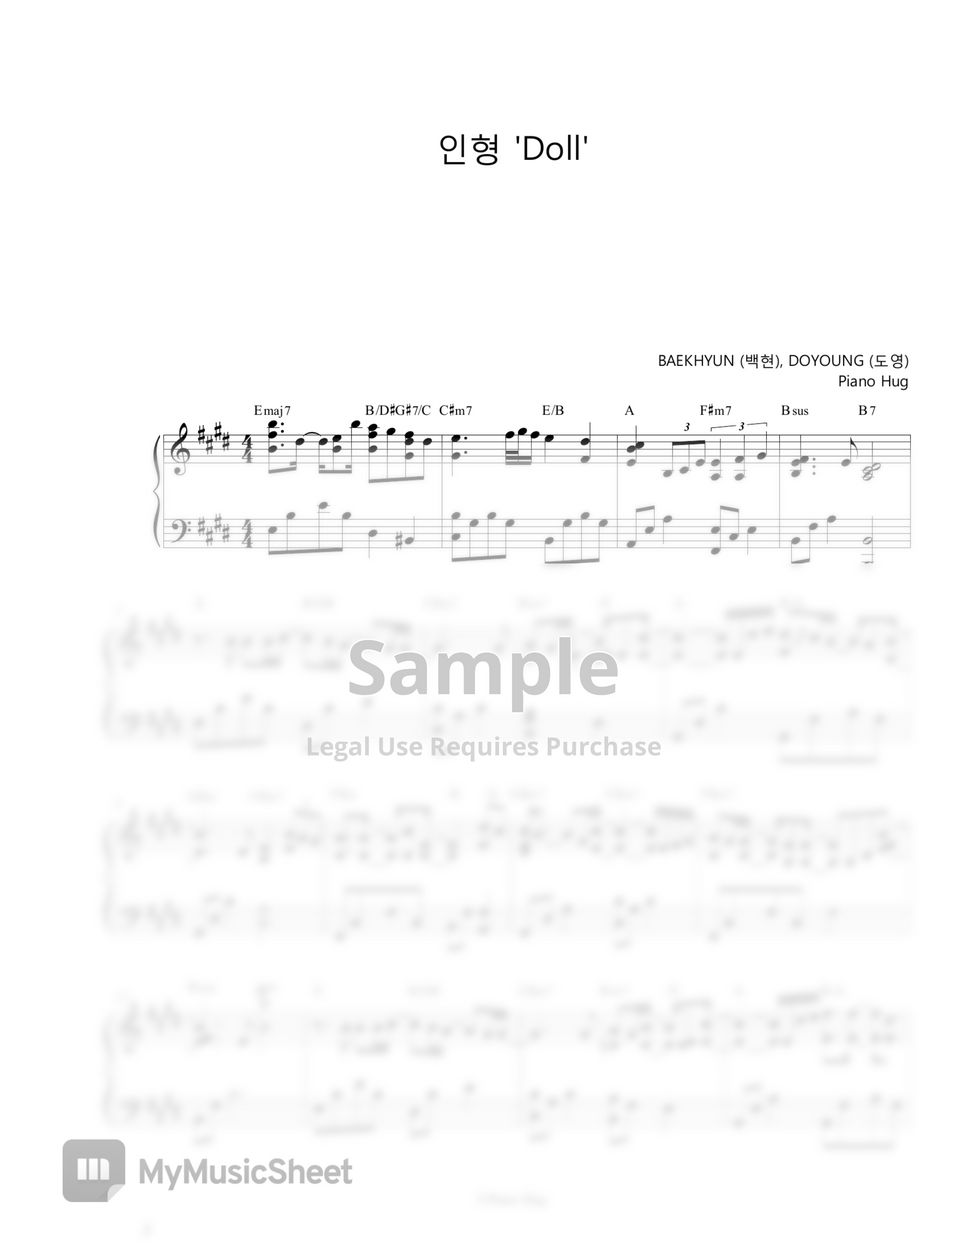 BAEKHYUN, DOYOUNG - Doll (Rewind : Blossom) by Piano Hug